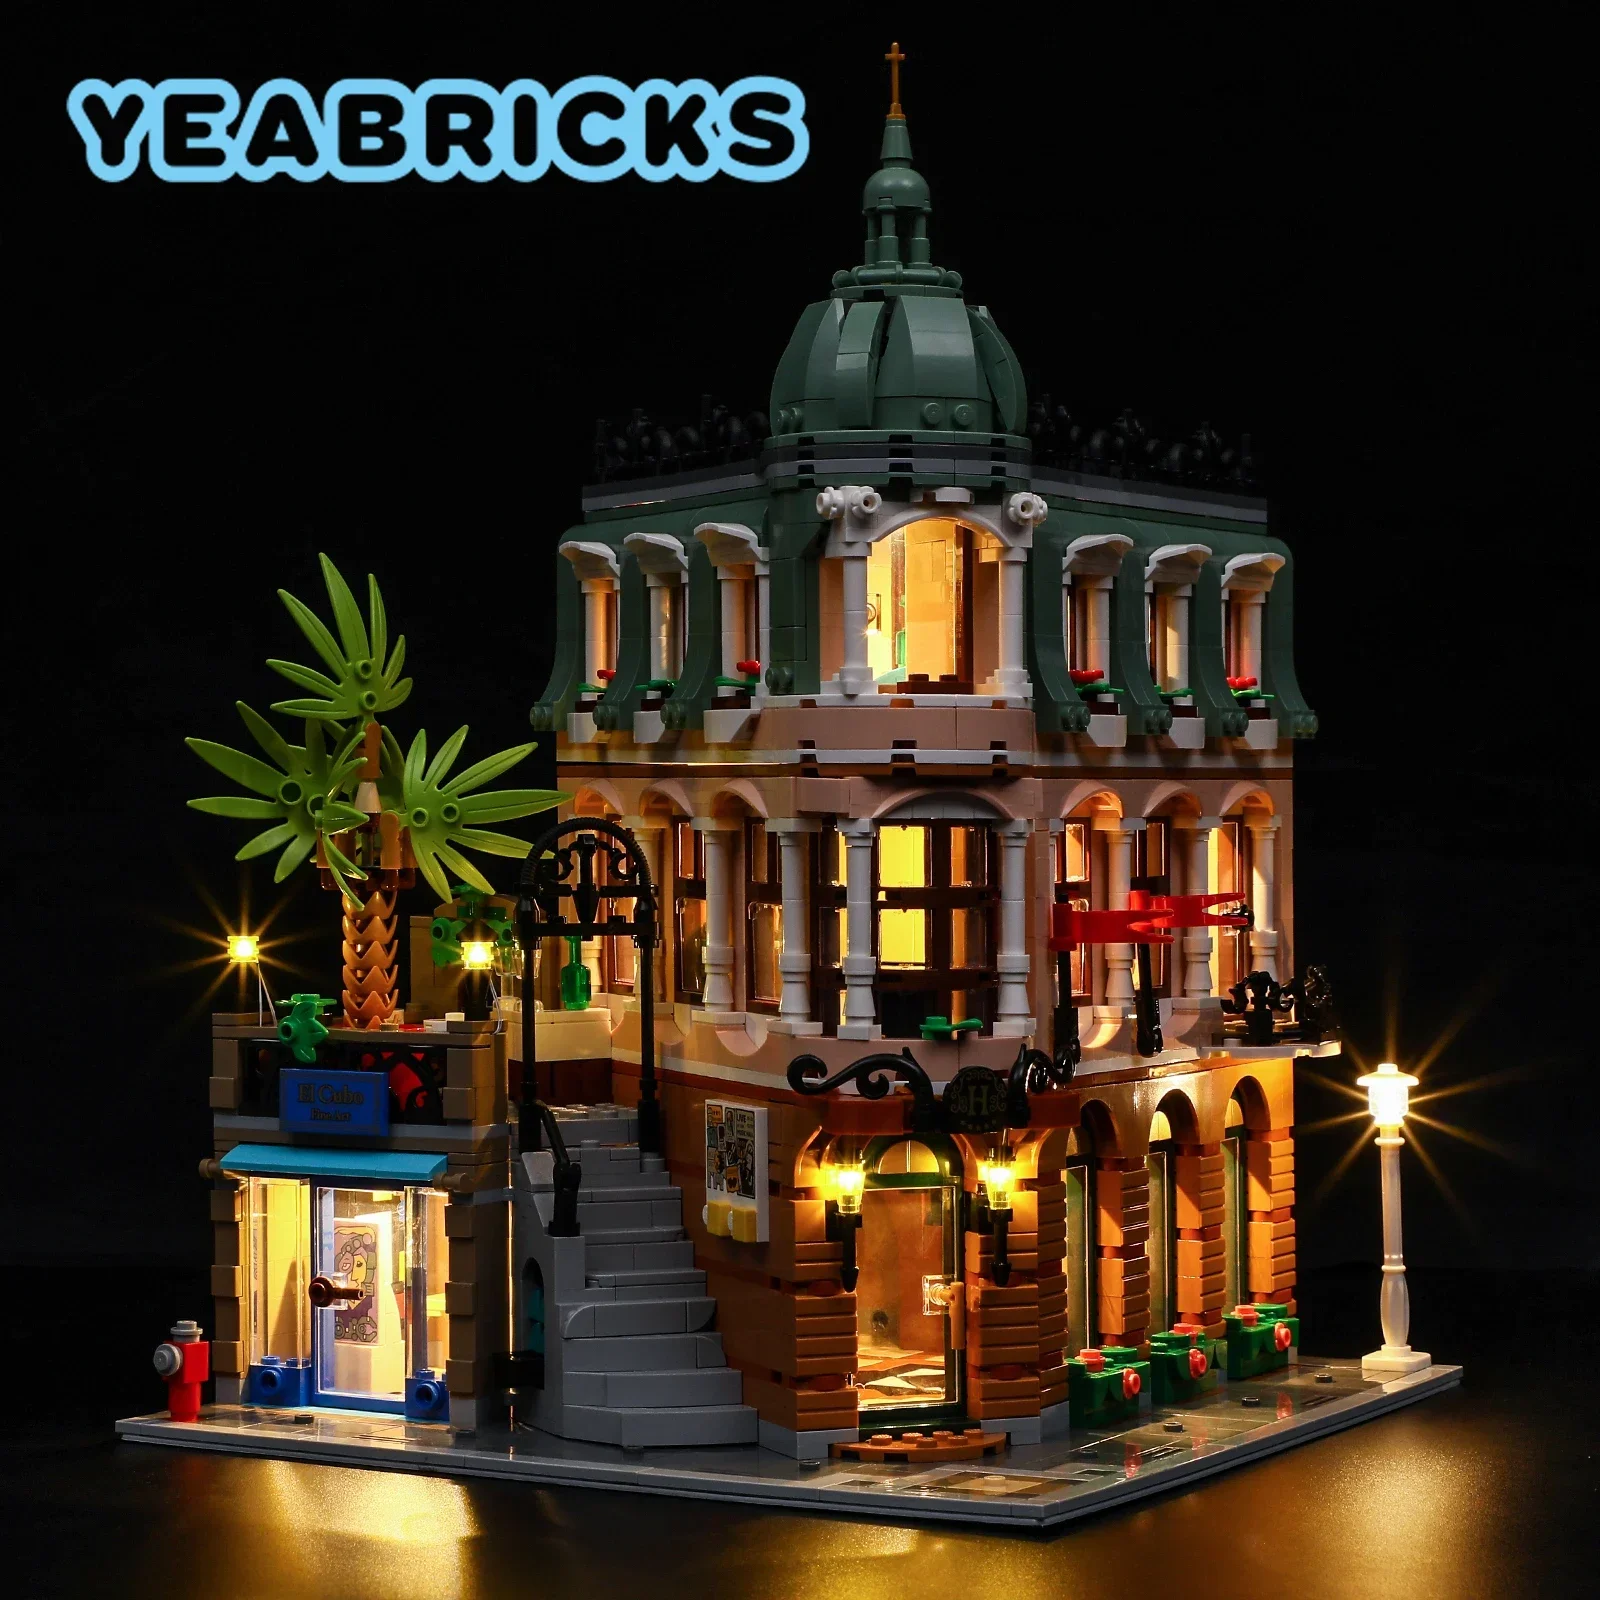 

YEABRICKS LED Light Kit for 10297 Boutique Hotel Building Blocks Set (NOT Include the Model) Bricks Toys for Children Model